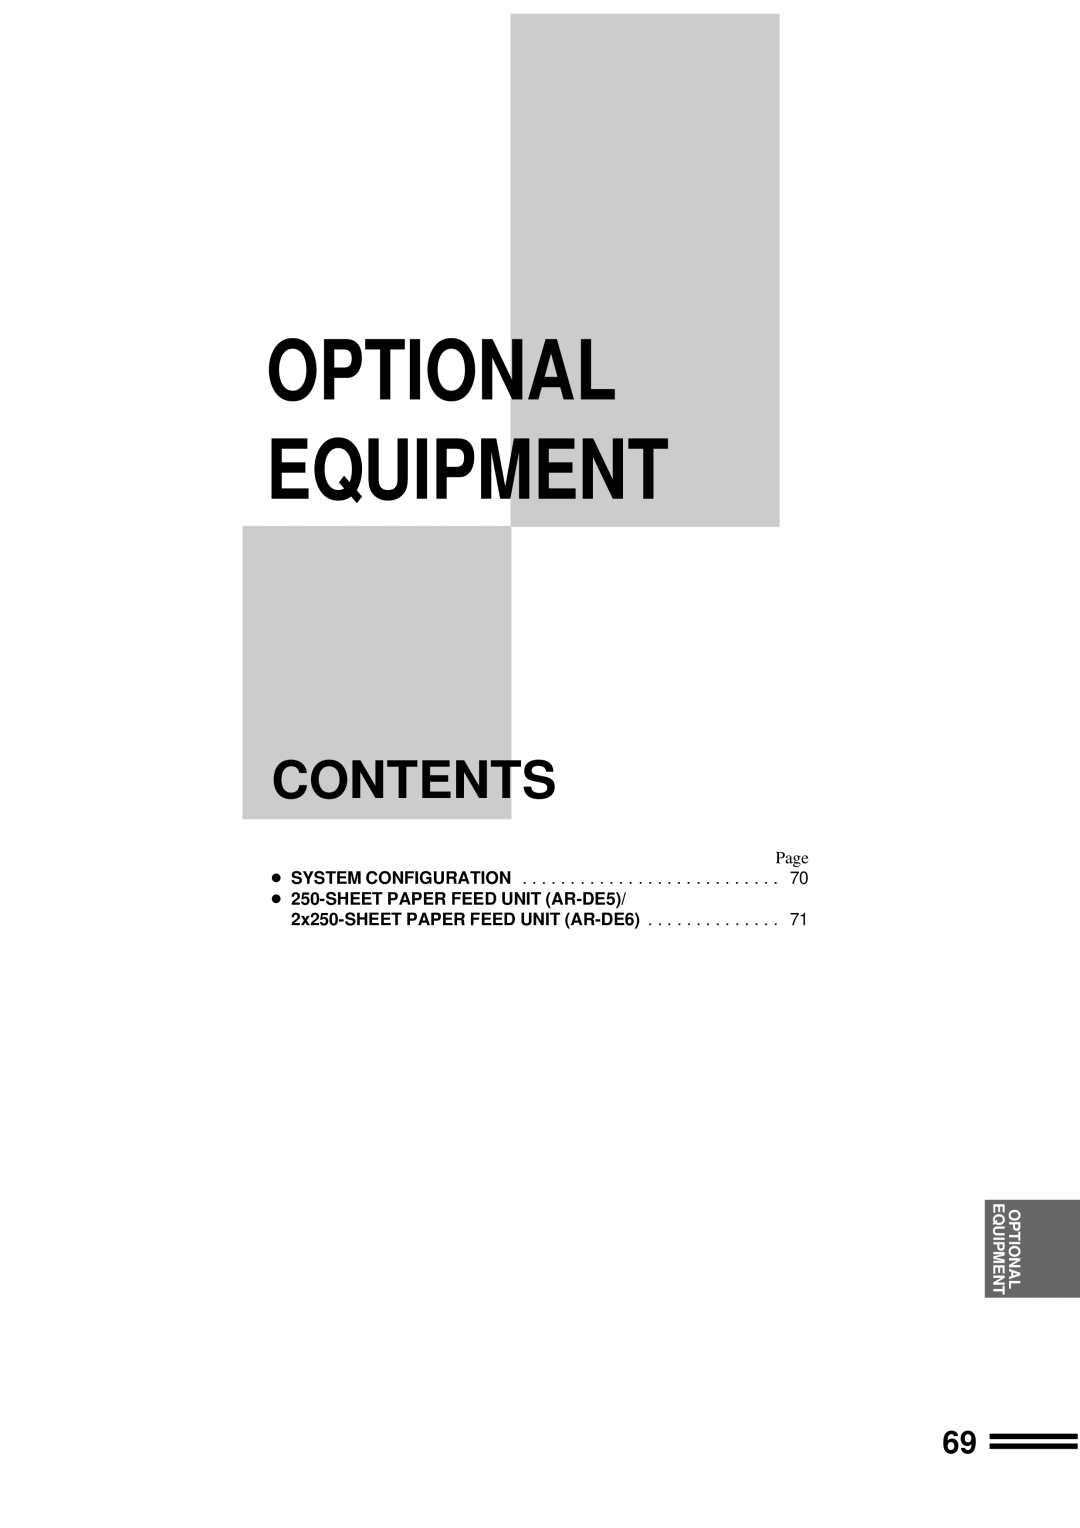 Sharp AR-207 operation manual Contents, Optional Equipment, SHEET PAPER FEED UNIT AR-DE5 2x250-SHEET PAPER FEED UNIT AR-DE6 